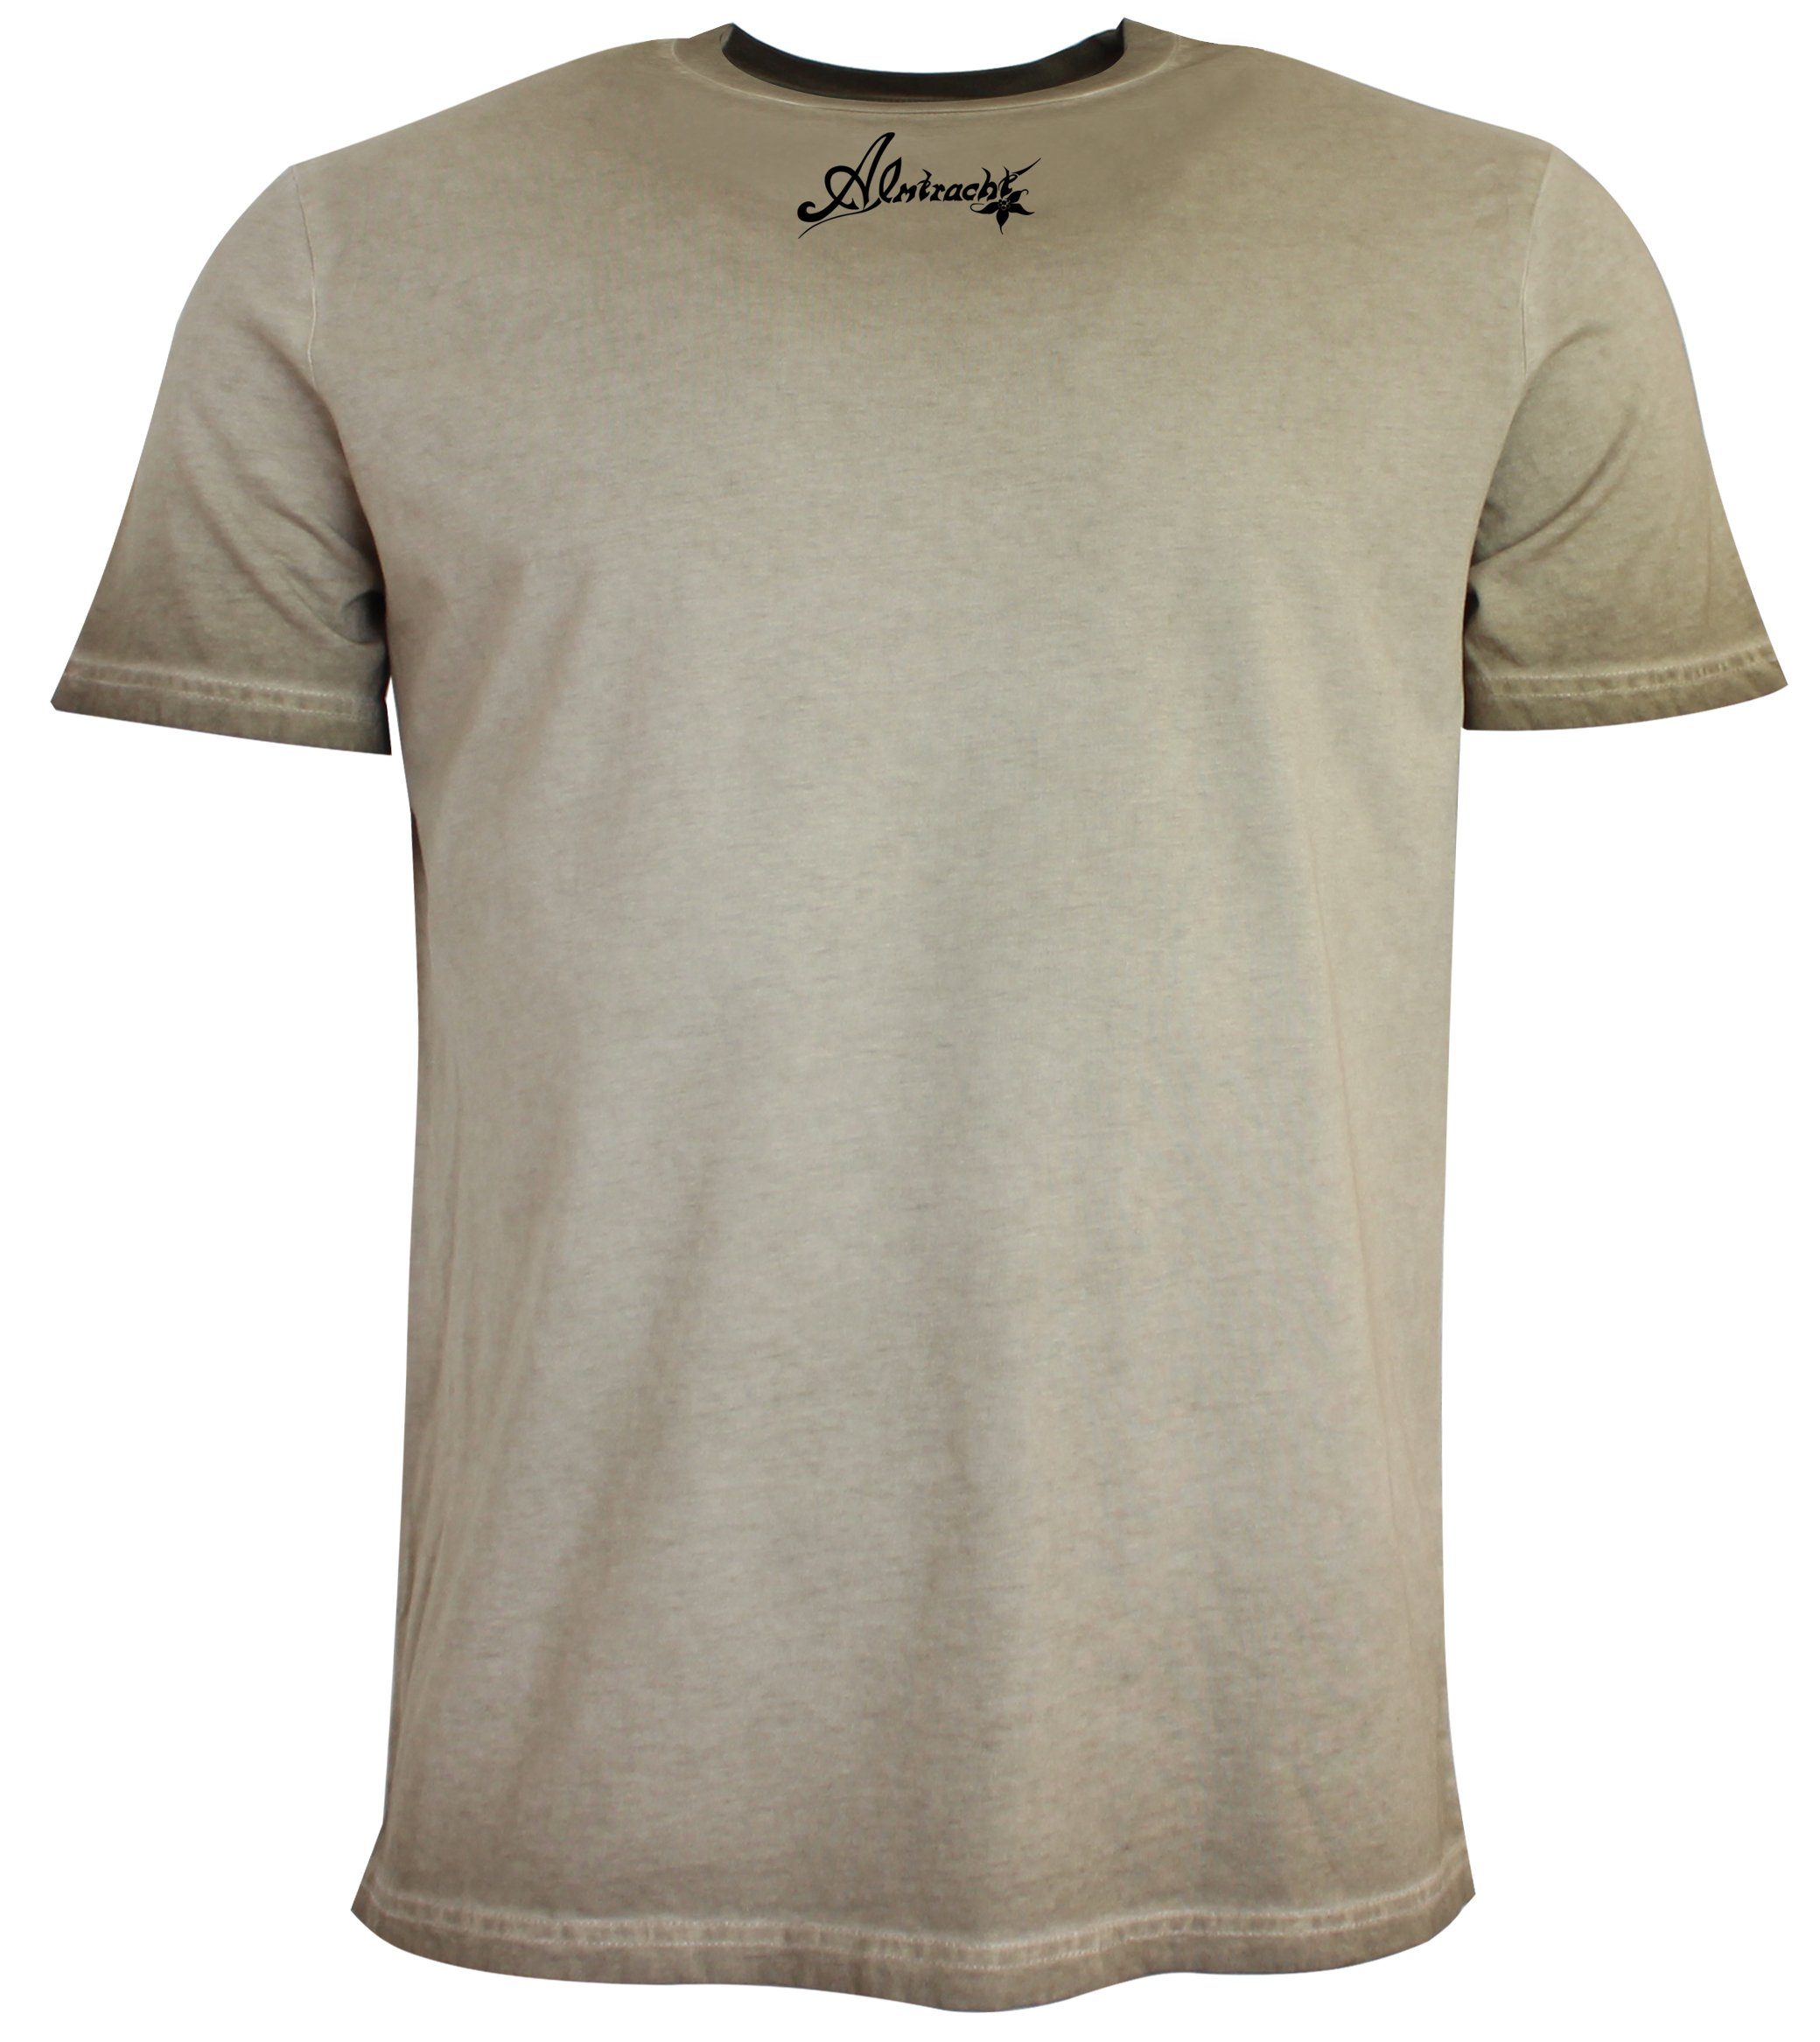 T-Shirt,hellbraun,used Albert Almtracht® Trachten Print-Shirt Optik,Trachtenrocker